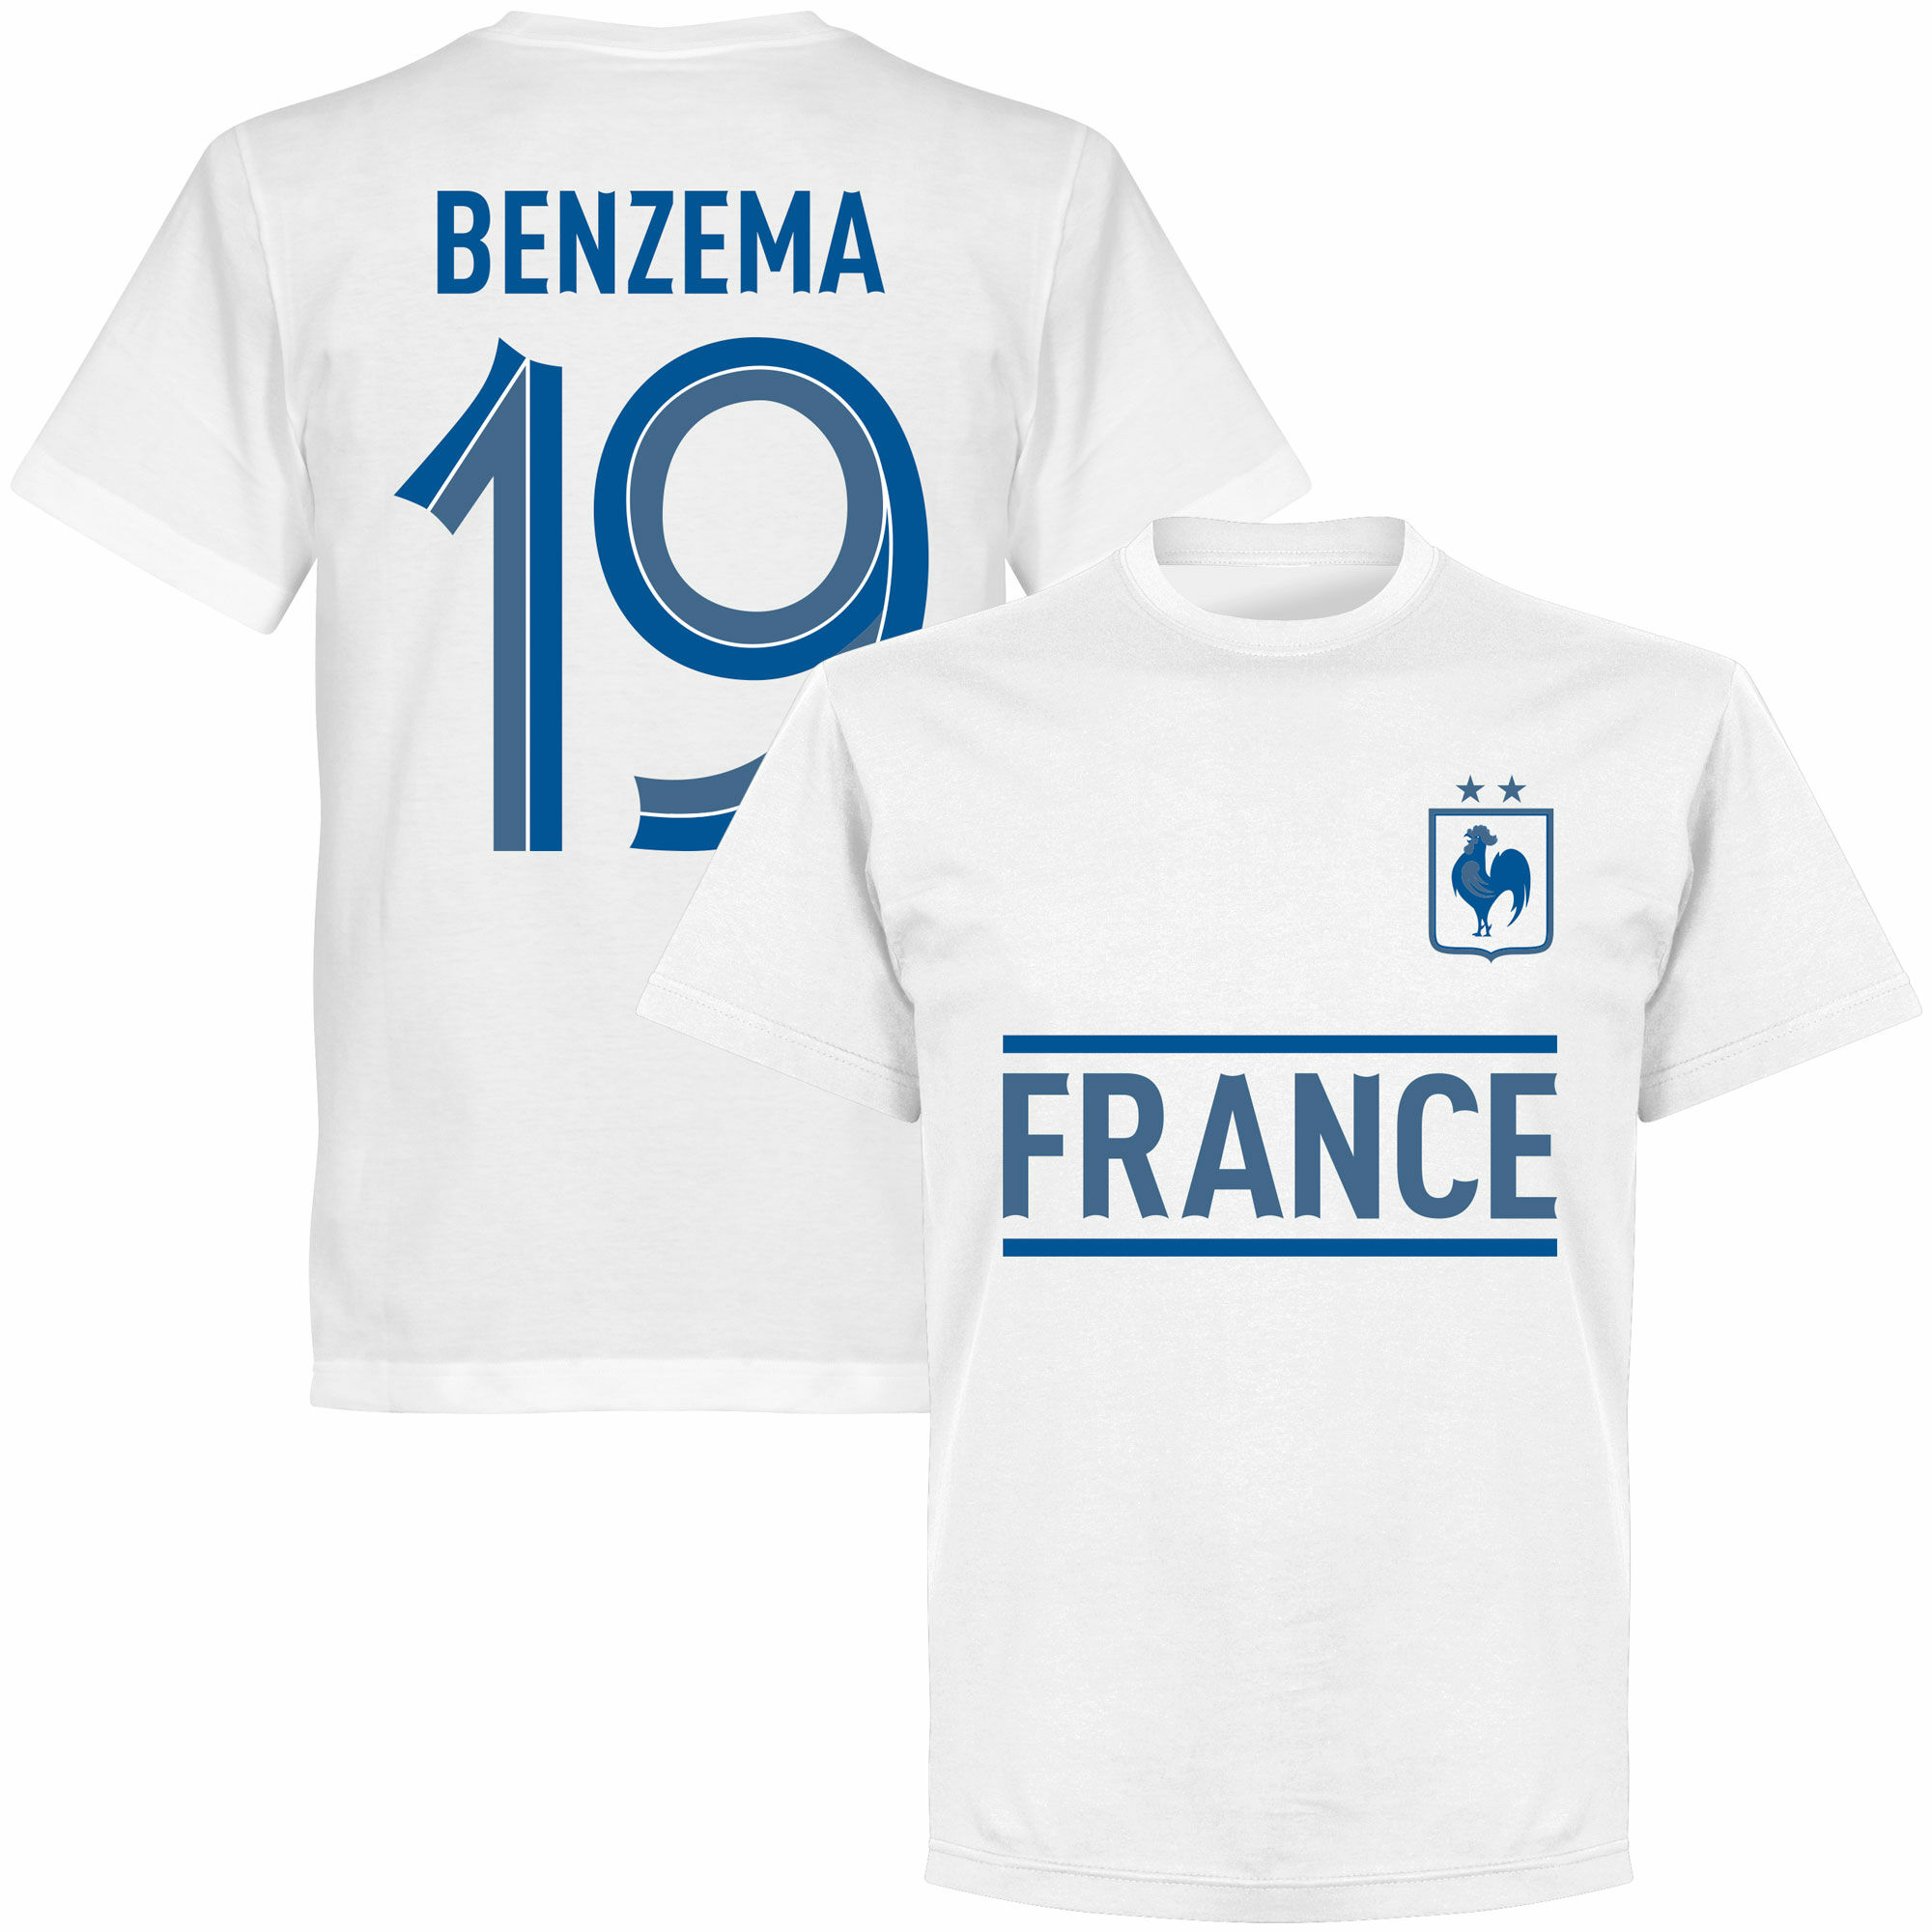 Francie - Tričko - číslo 19, Karim Benzema, bílé